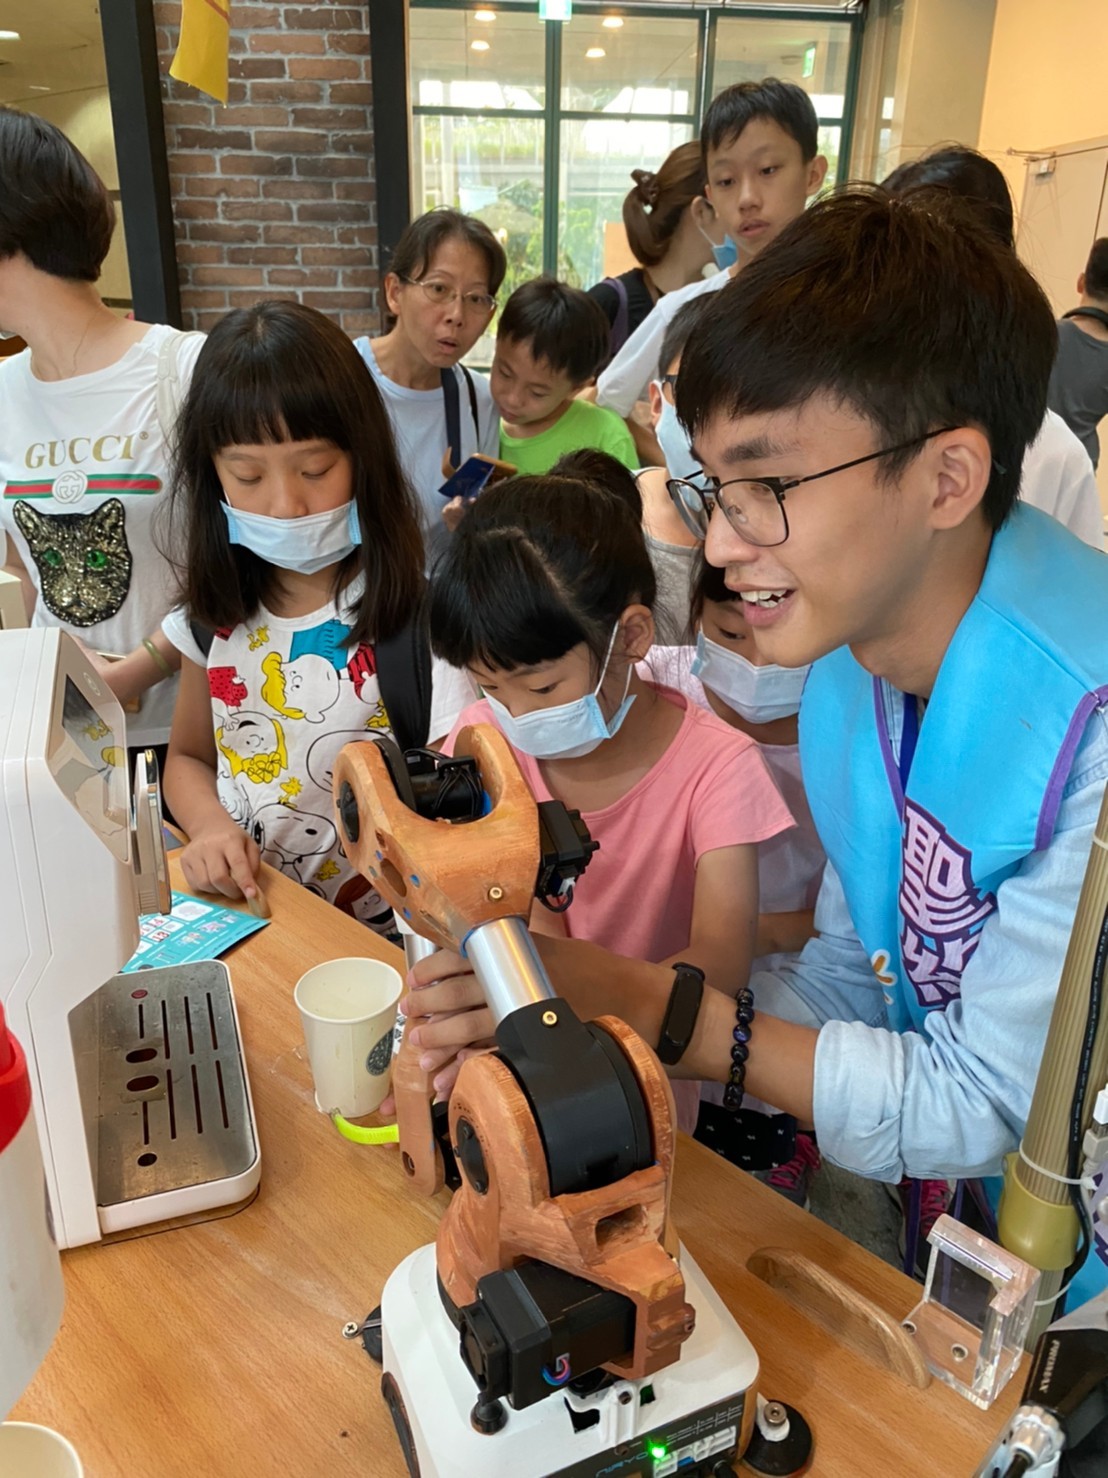 機器人咖啡餐車在展場中受到熱烈歡迎，排隊體驗的中小學生絡繹不絕。